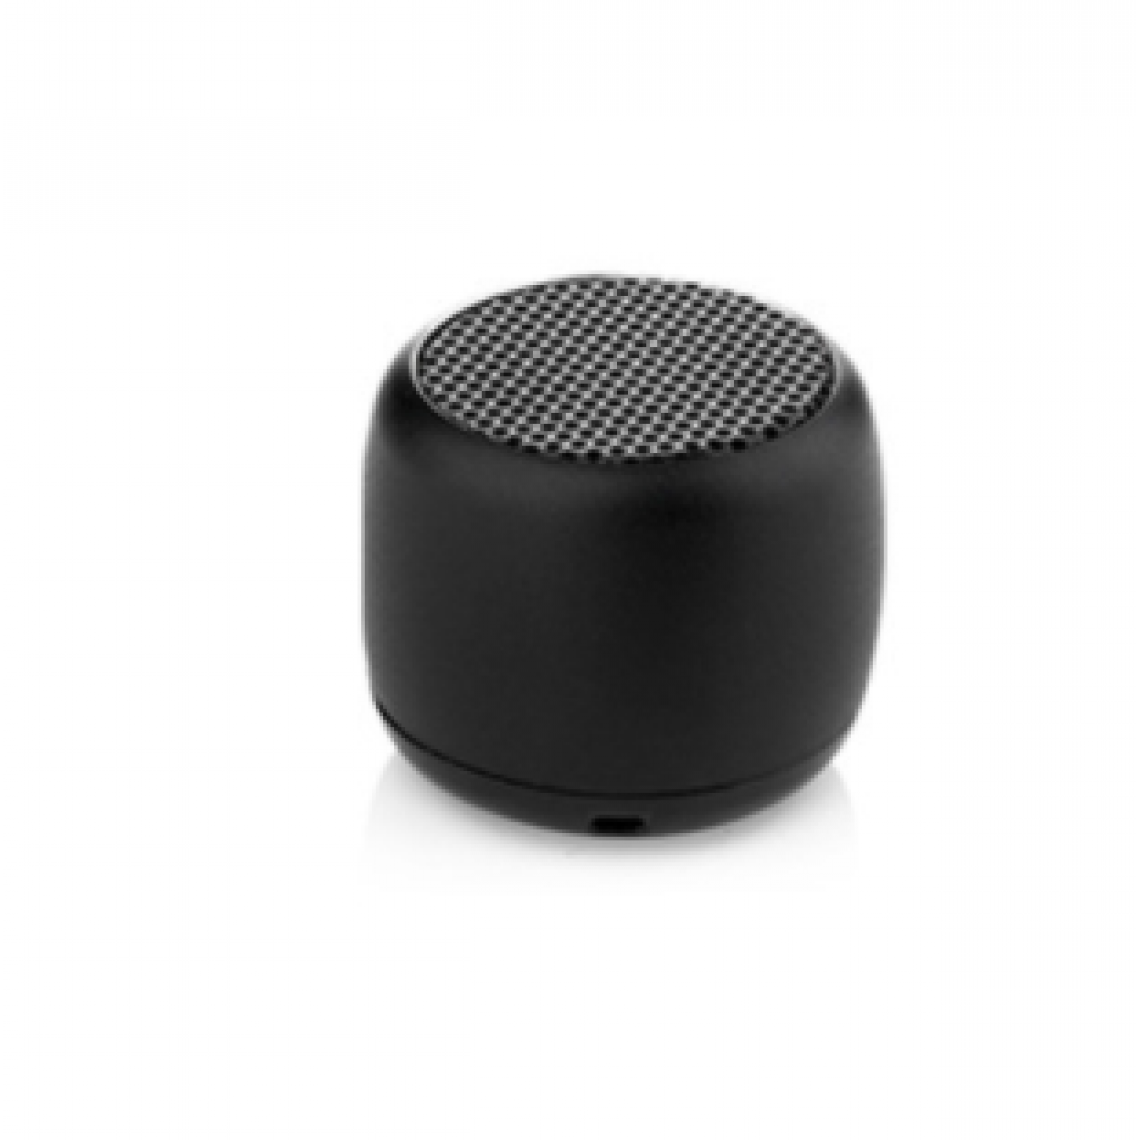 Chrono - Mini haut-parleur portable Haut-parleur sans fil Bluetooth, avec microphone, coque en métal robuste, lumière LED, 5 heures de lecture, peut être associé à un son surround stéréo(Noir) - Enceinte PC